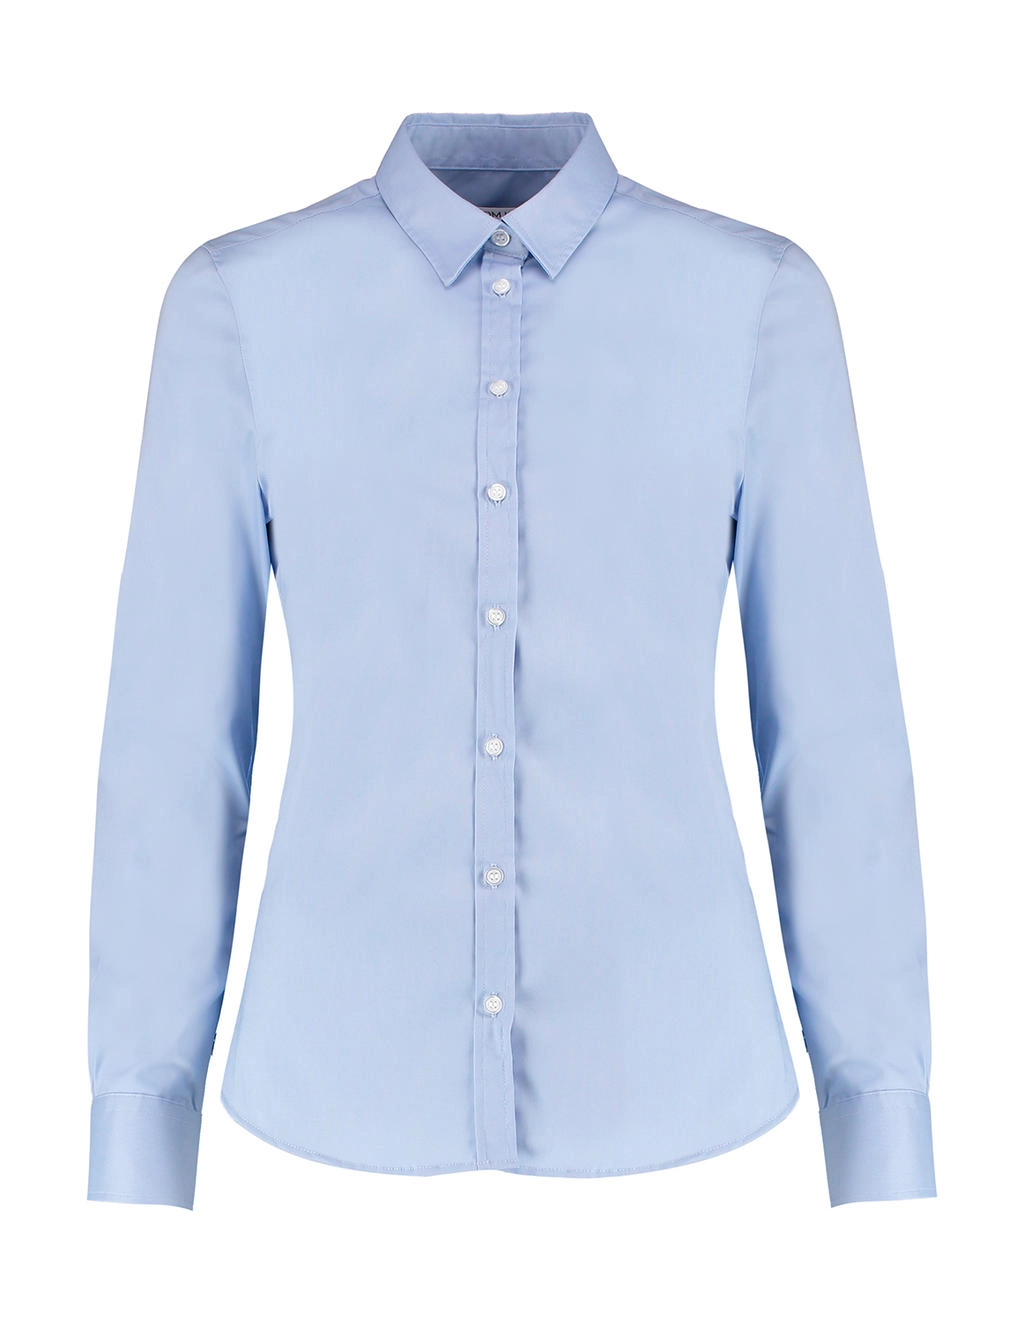 Women`s Tailored Fit Stretch Oxford Shirt LS zum Besticken und Bedrucken in der Farbe Light Blue mit Ihren Logo, Schriftzug oder Motiv.